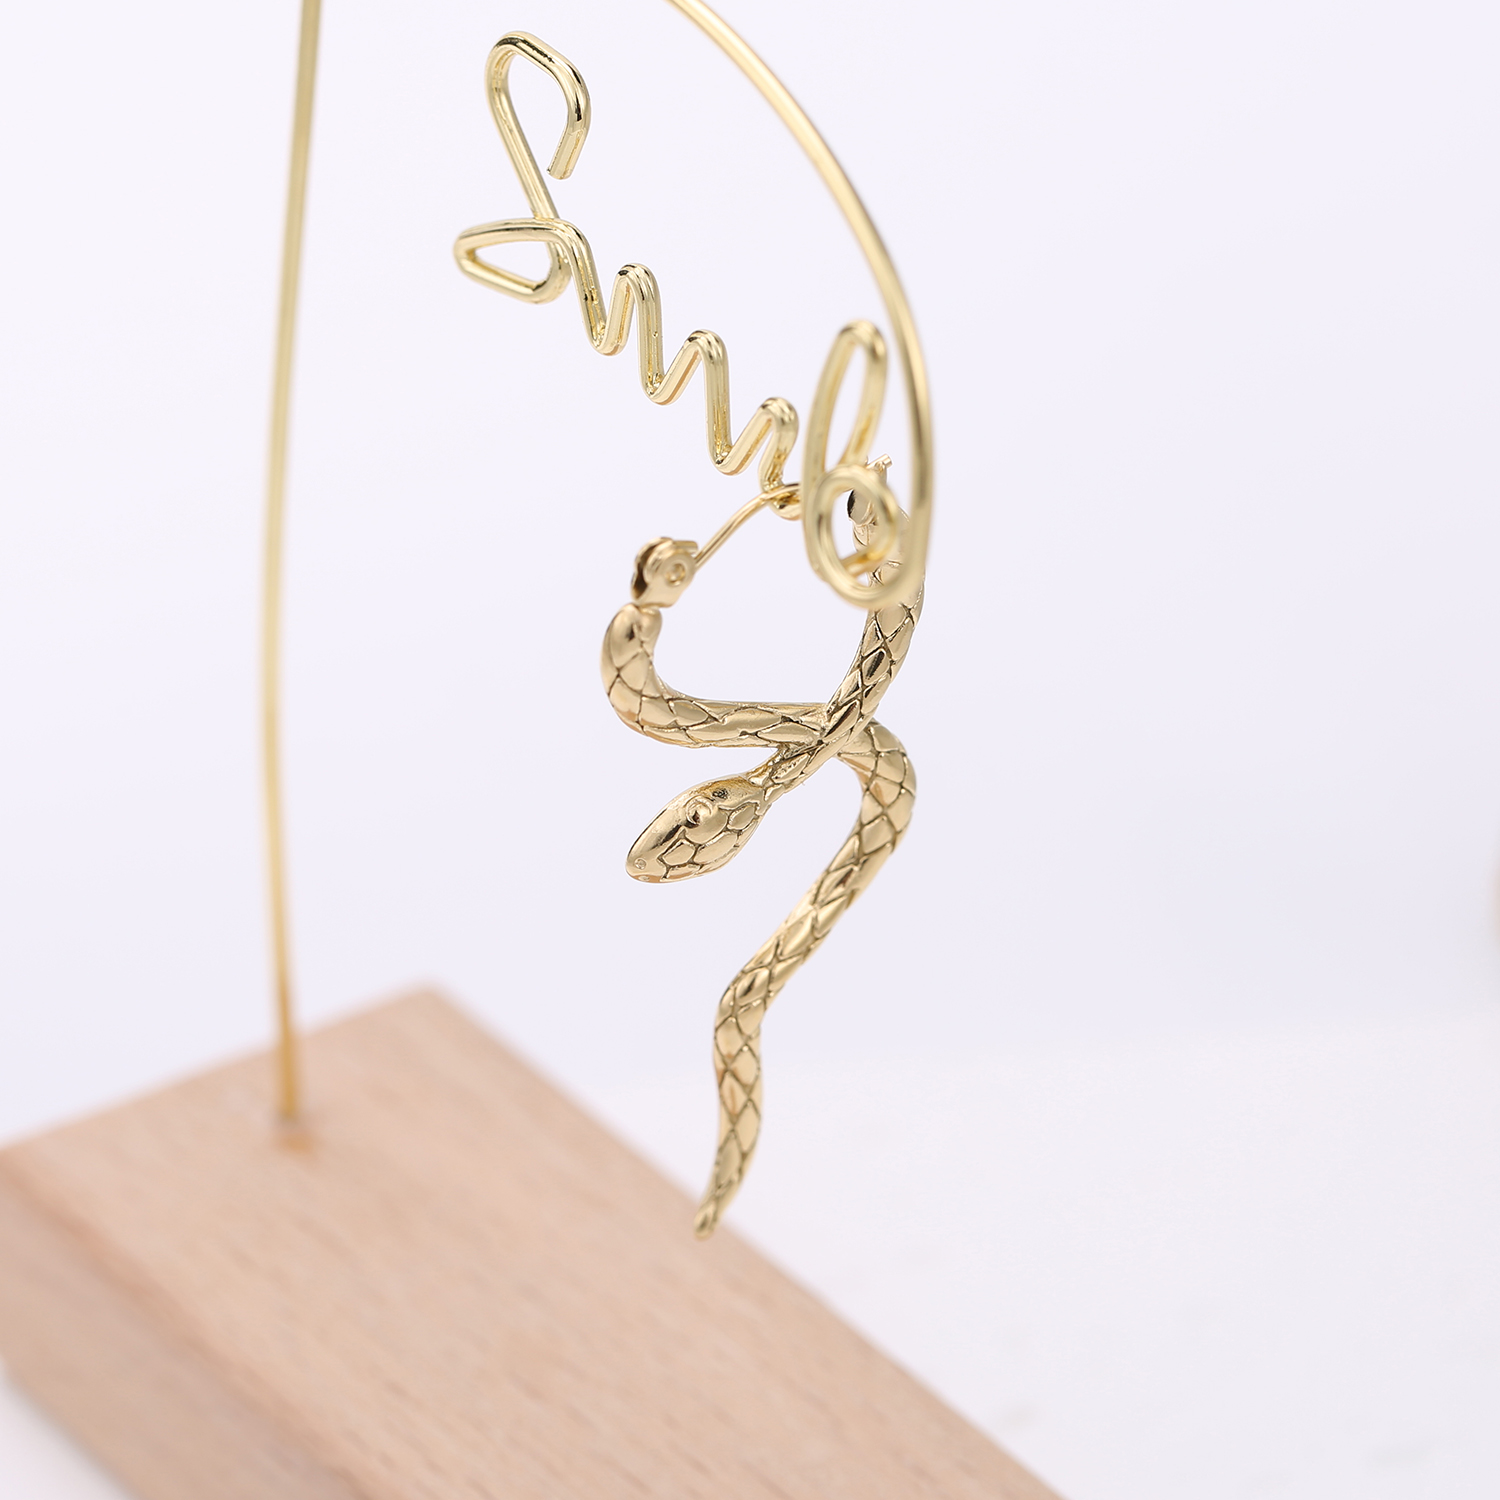 Стильные уникальные серьги-кольца из нержавеющей стали со змеей, эффектные водостойкие очаровательные ювелирные изделия с PVD-покрытием золотого цвета